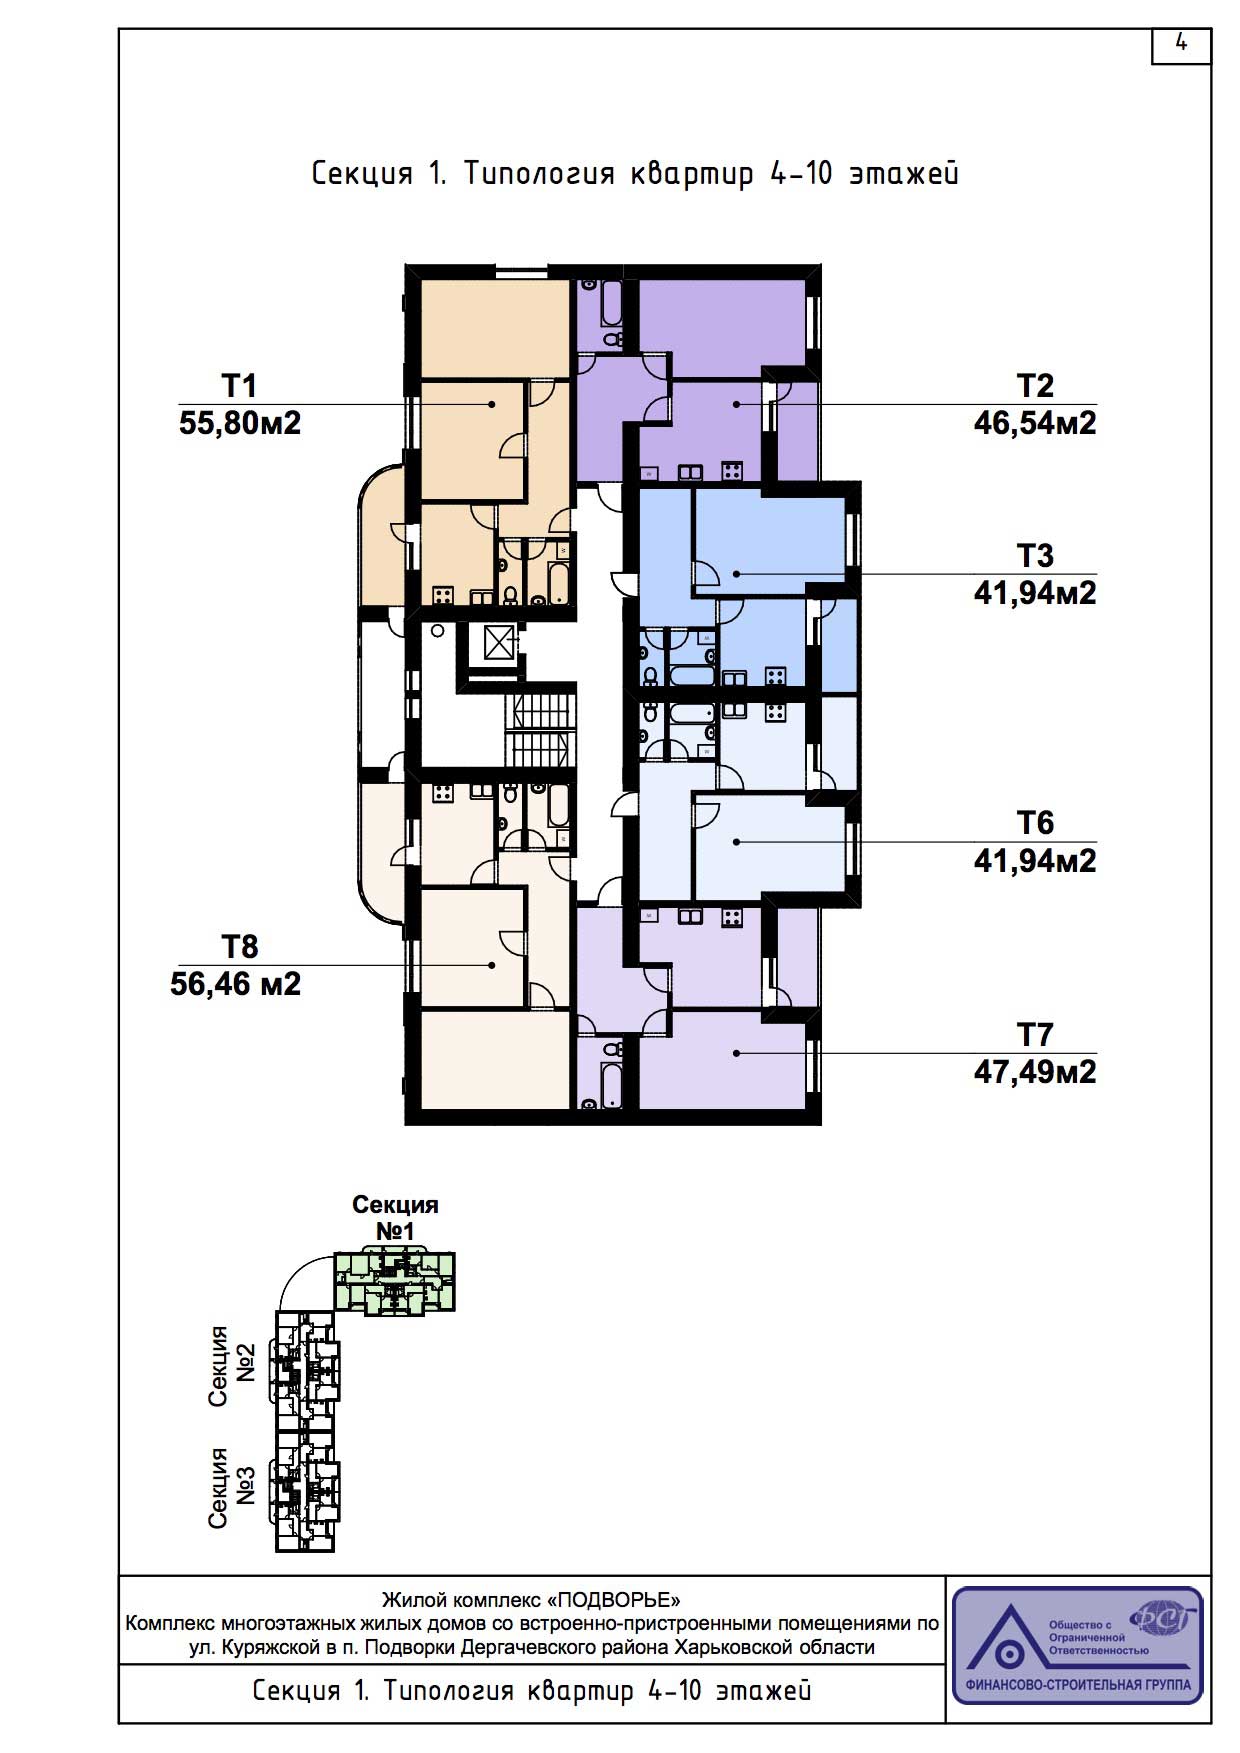 План, ЖК Подворье, секция 1, 4-10 этаж